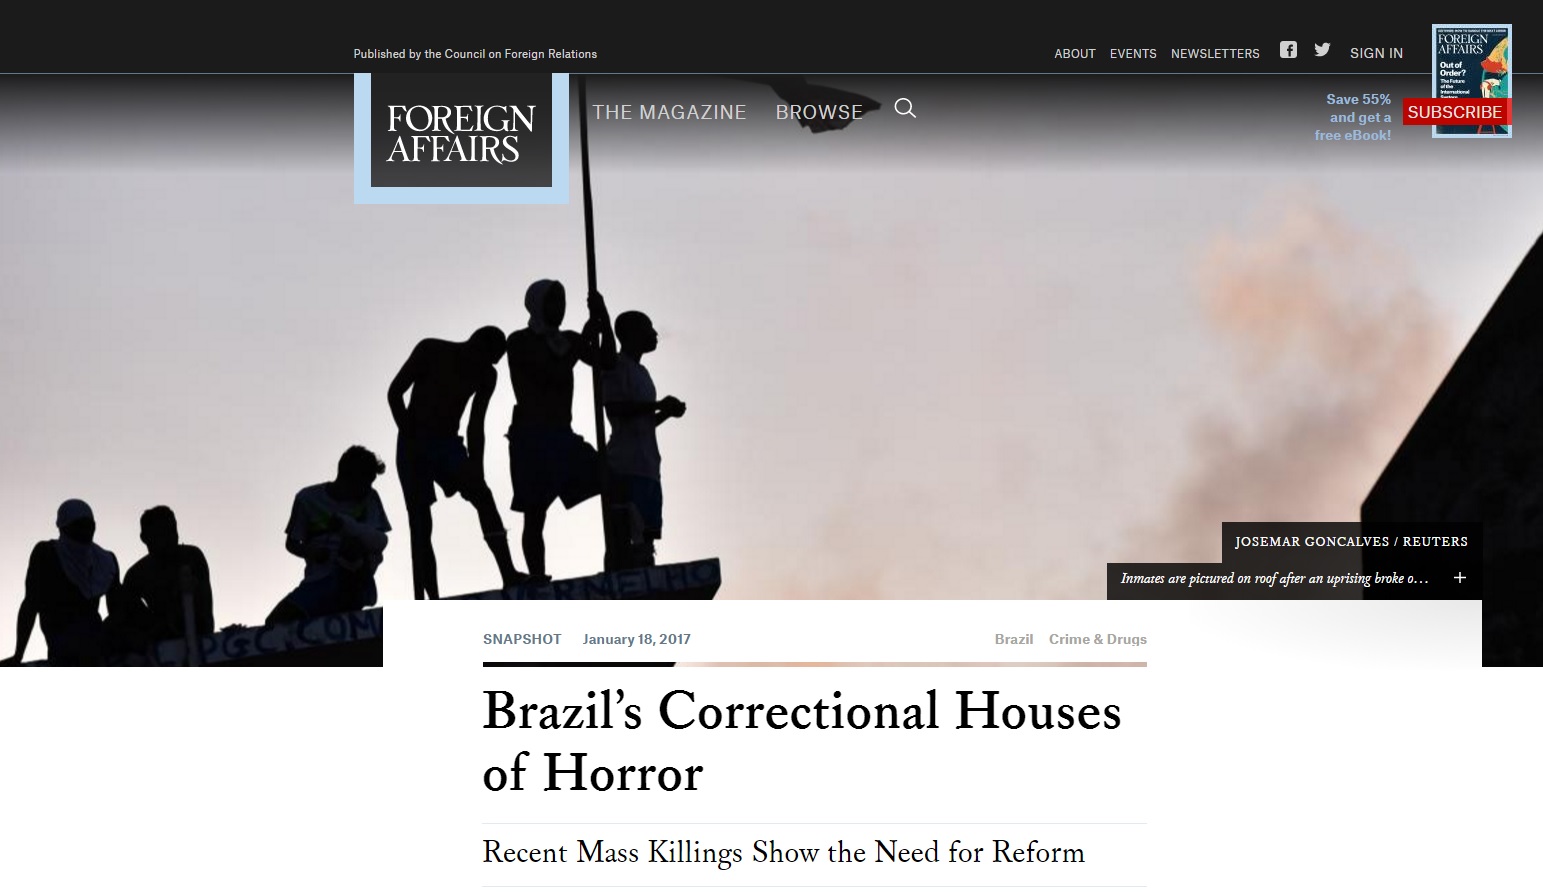 Onda de violência mostra que presídios brasileiros são um horror, diz mídia estrangeira